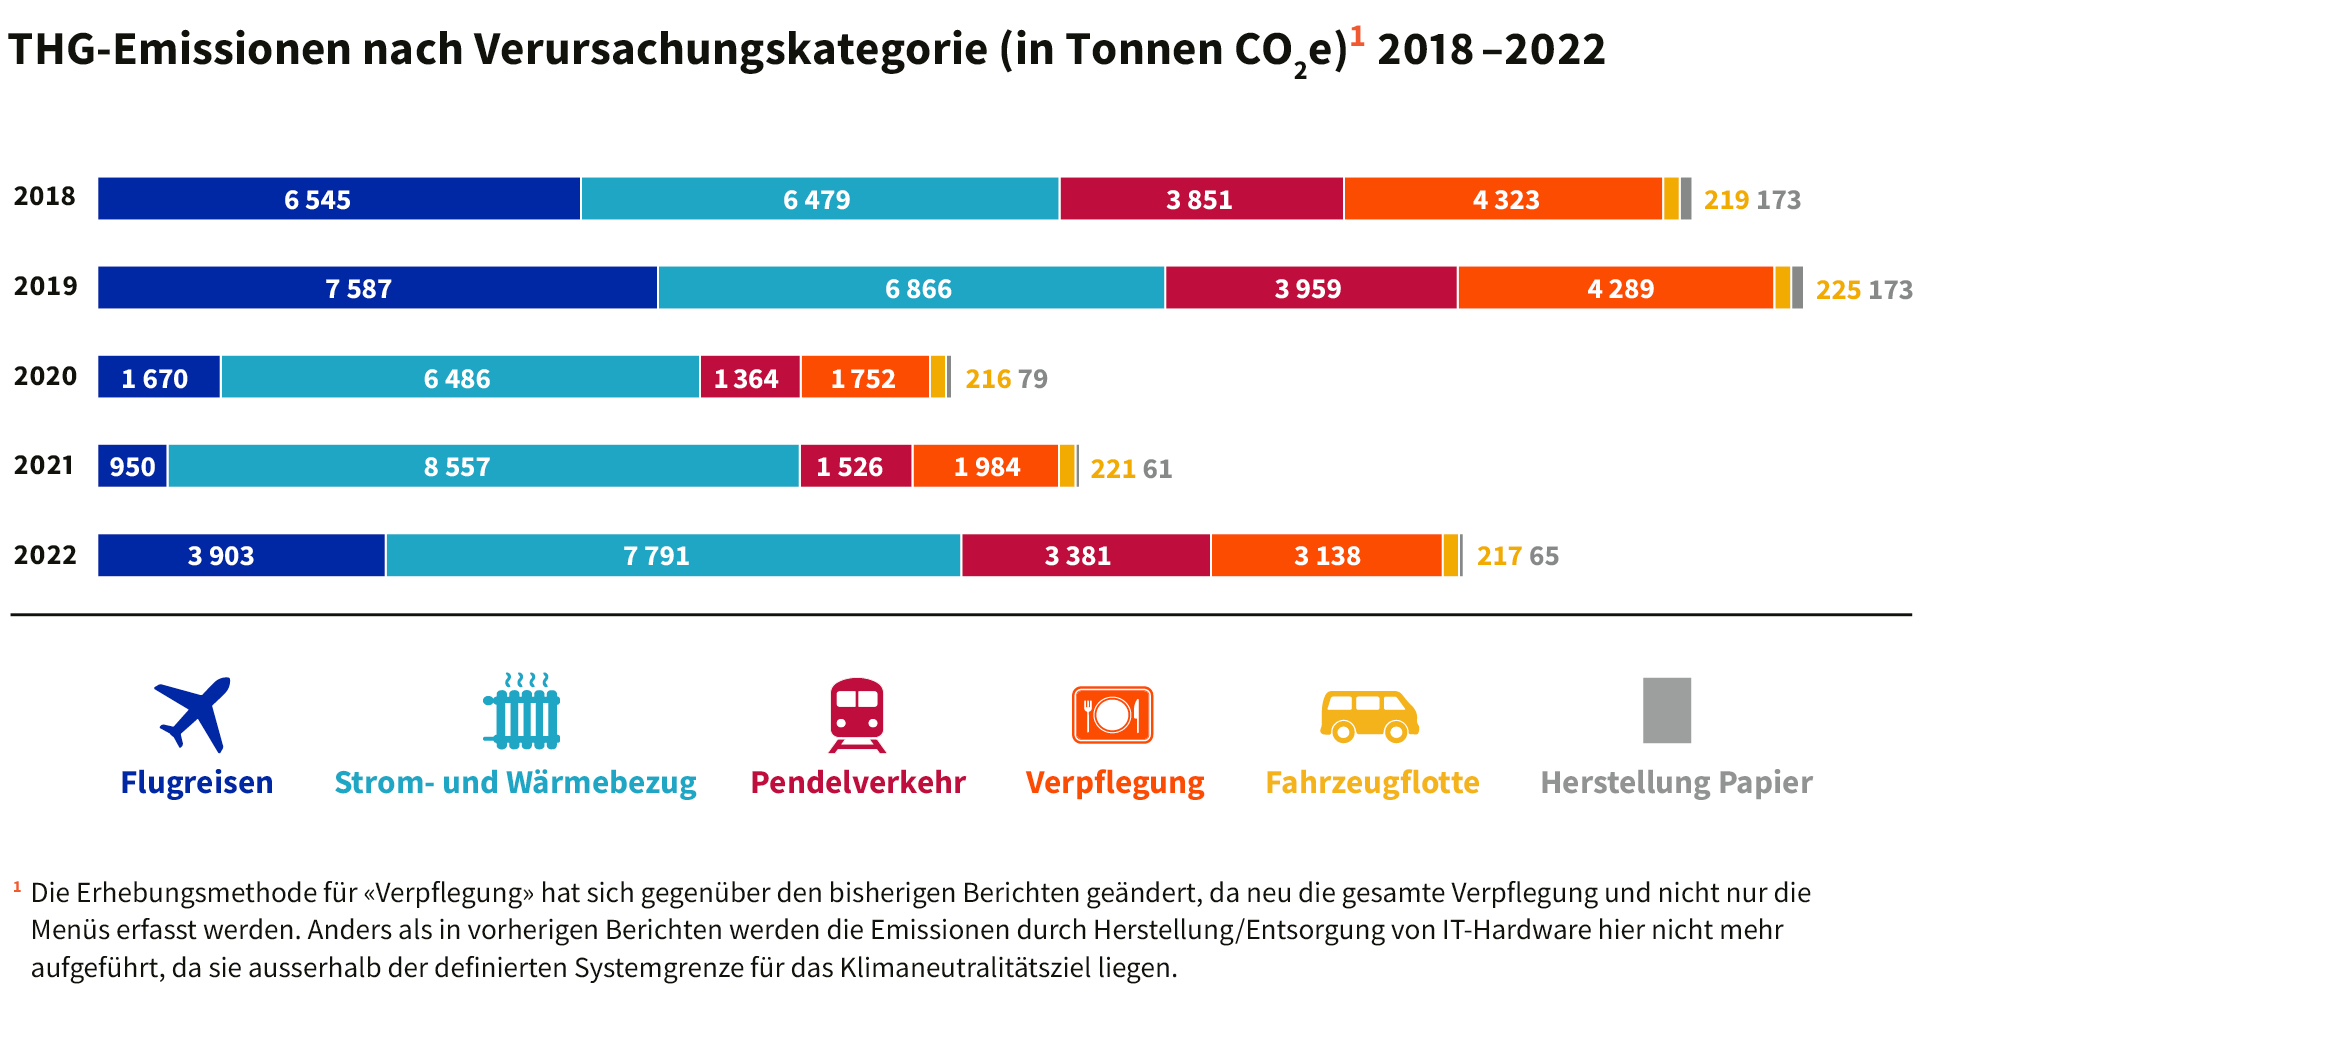 THG-Emissionen nach Verursachungskategorie 2018 –2022